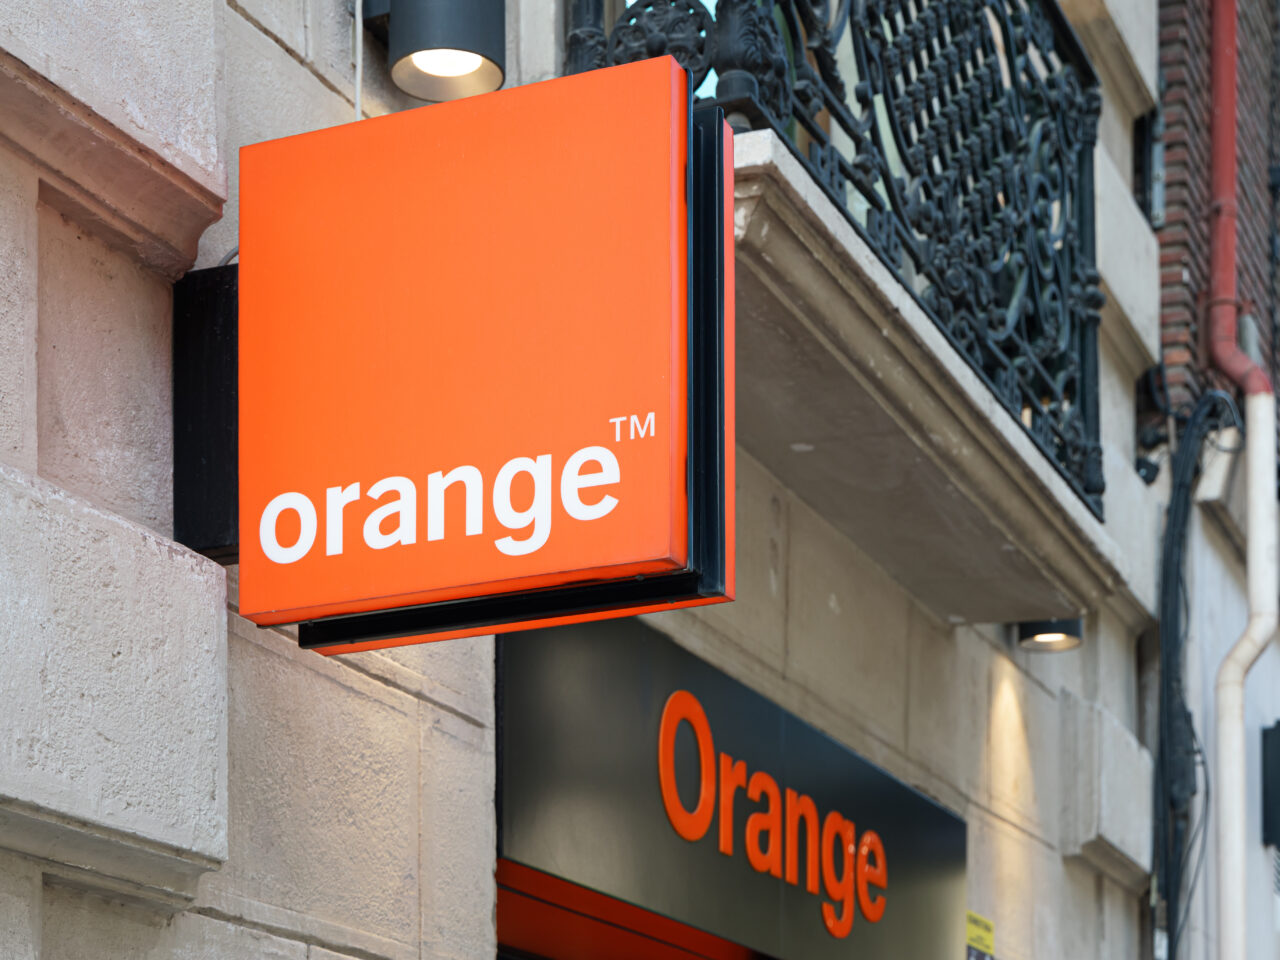 Tablica reklamowa operatora Orange™ zamontowana na zewnętrznej ścianie budynku. 5G w Orange jest coraz lepiej dostępne.